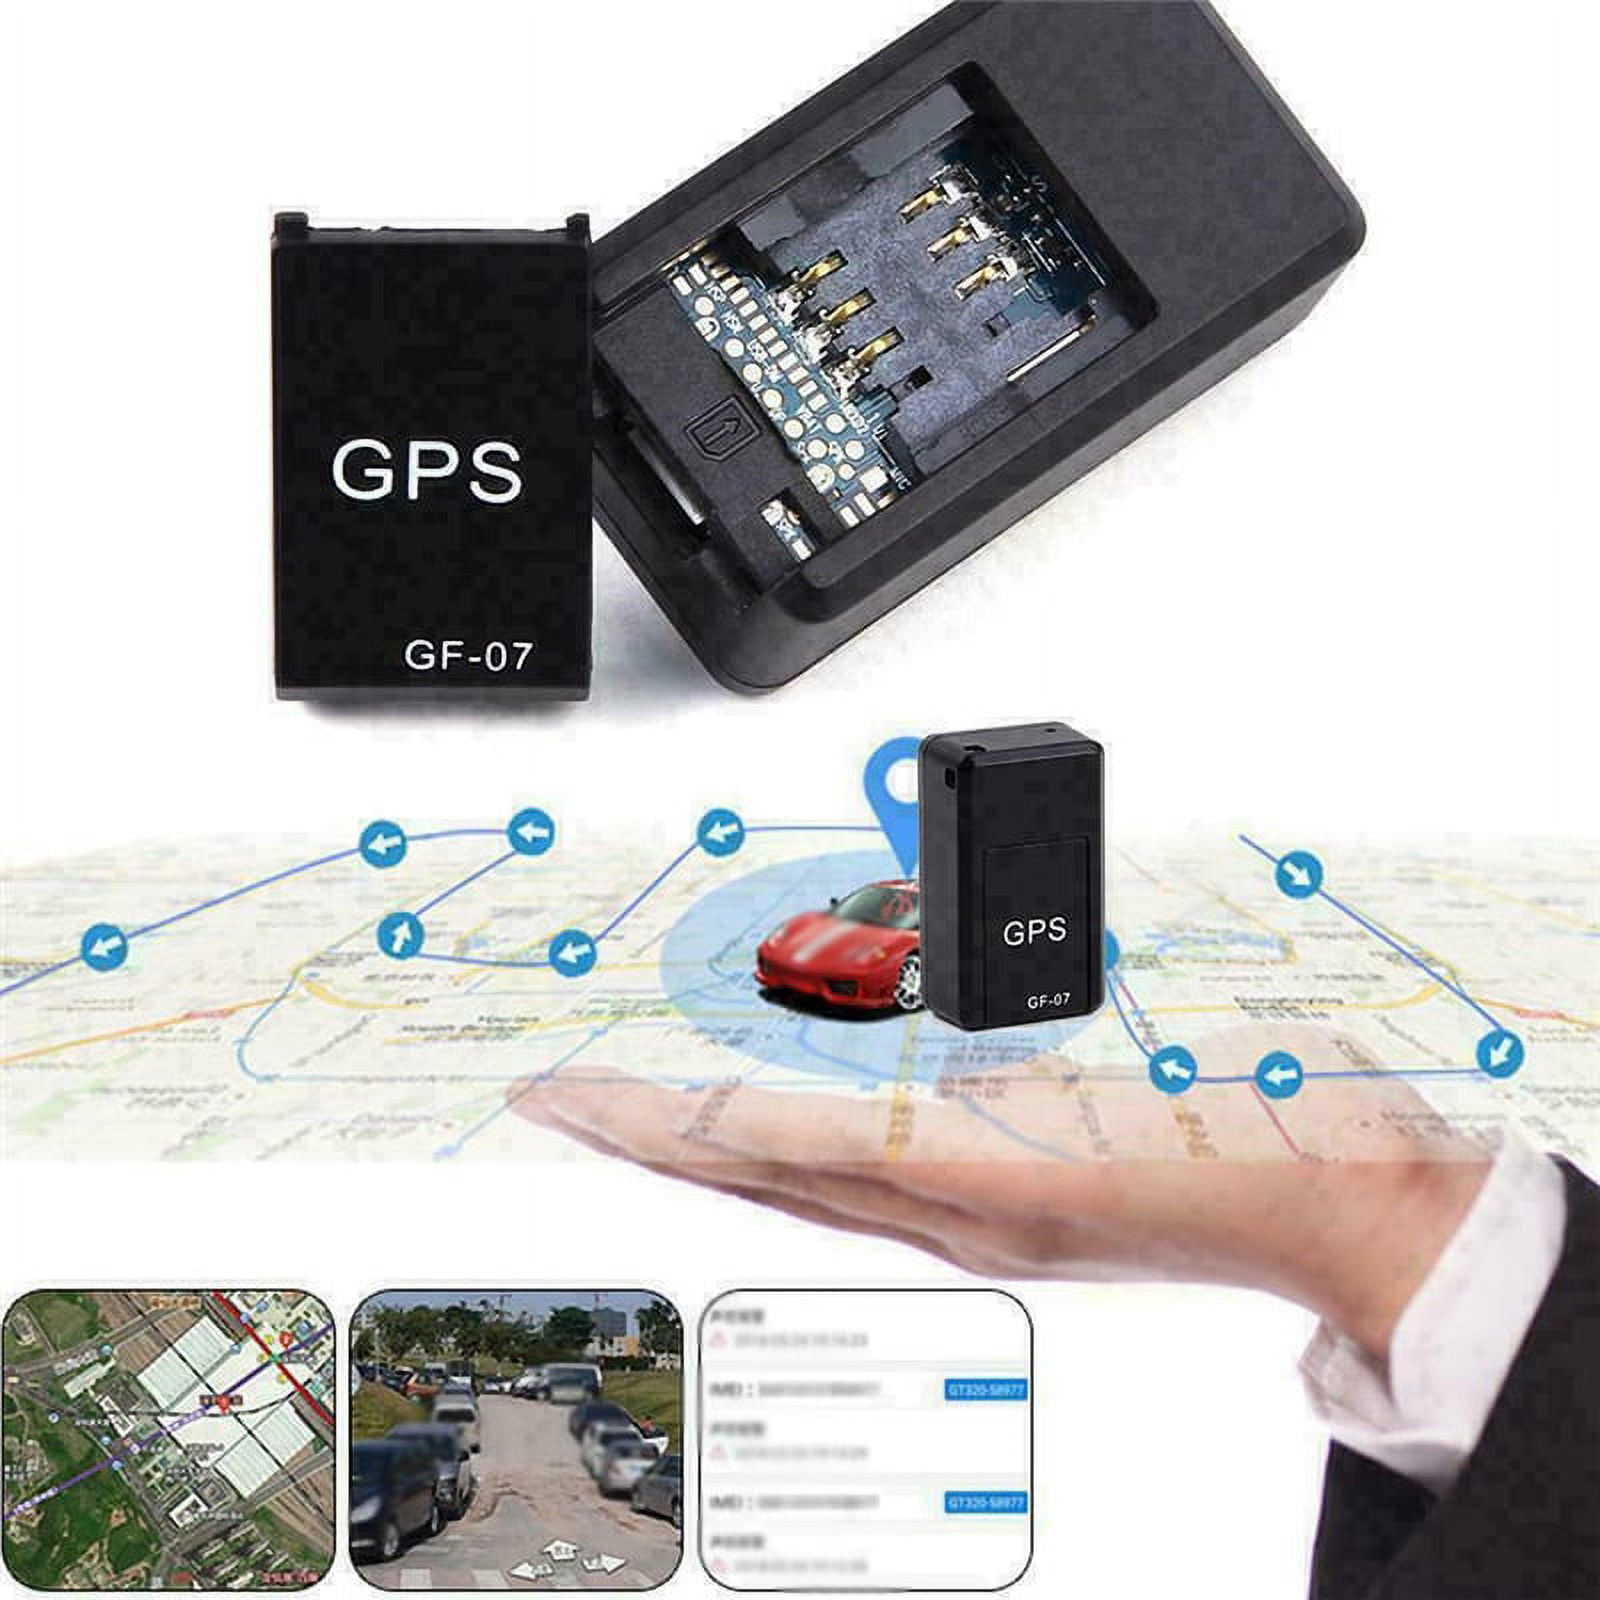 ✓ Mini localizador GPS GF - 07 